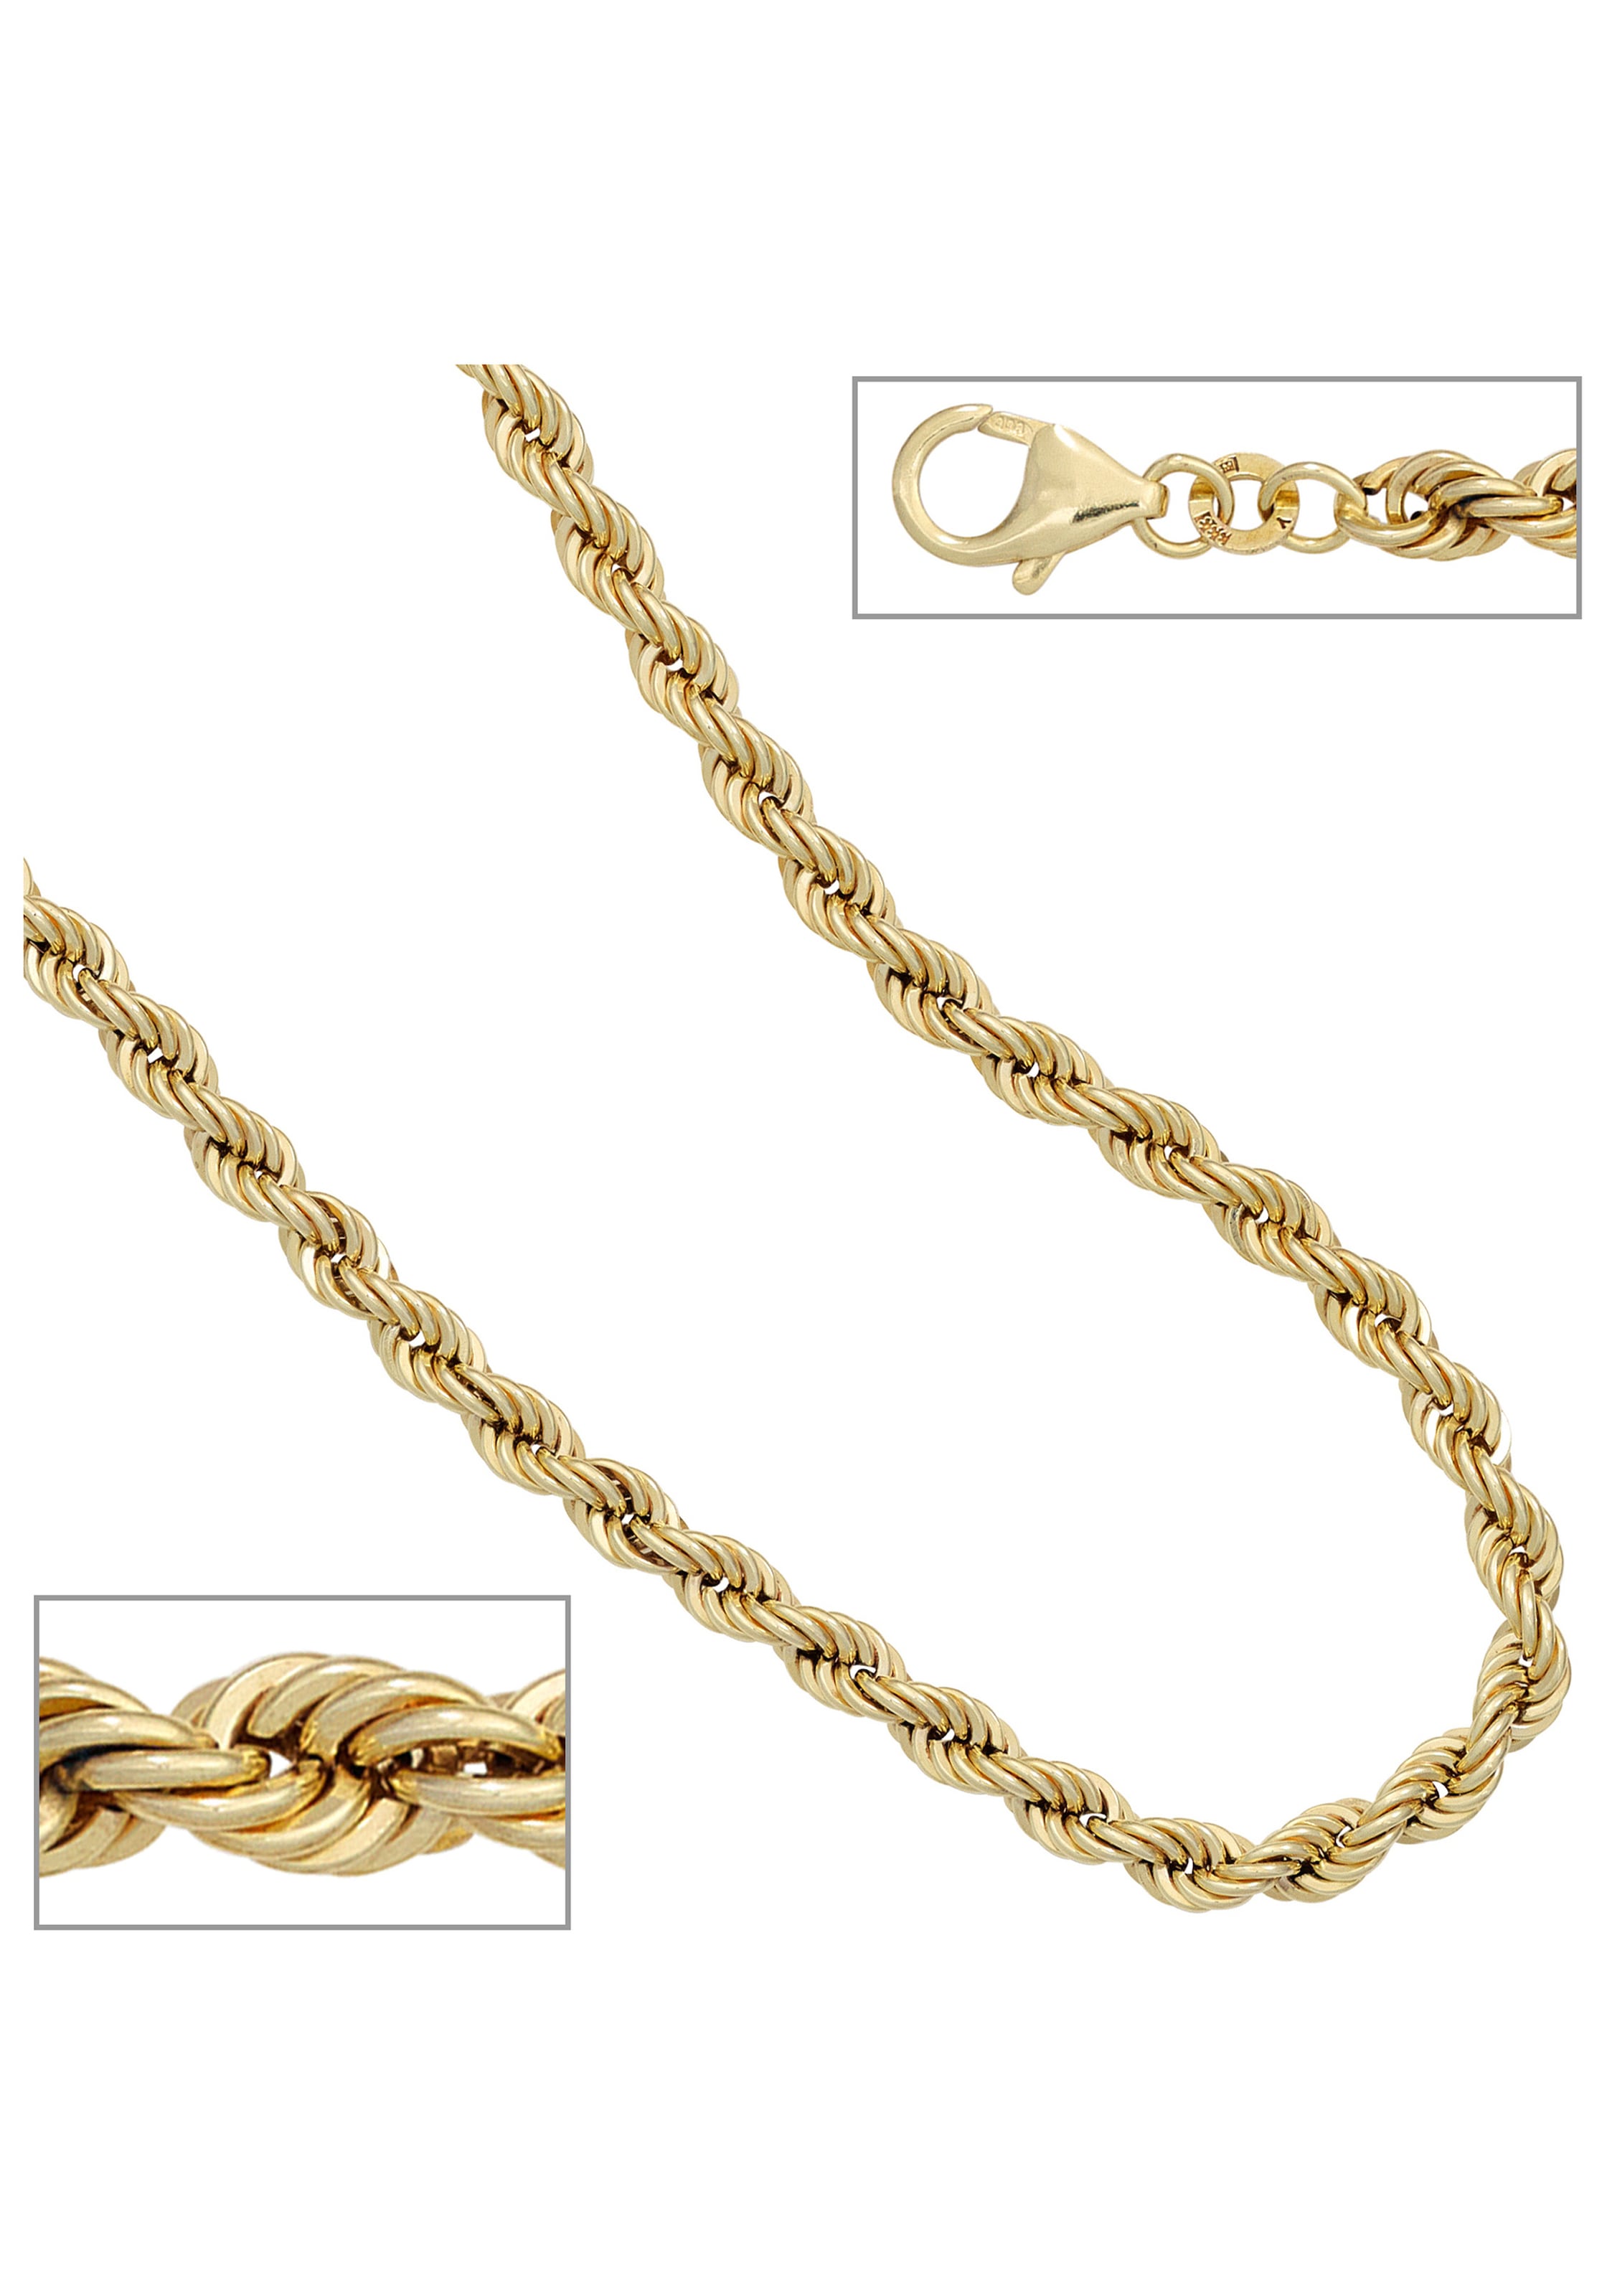 JOBO Goldkette, Kordelkette 585 Gold 45 cm